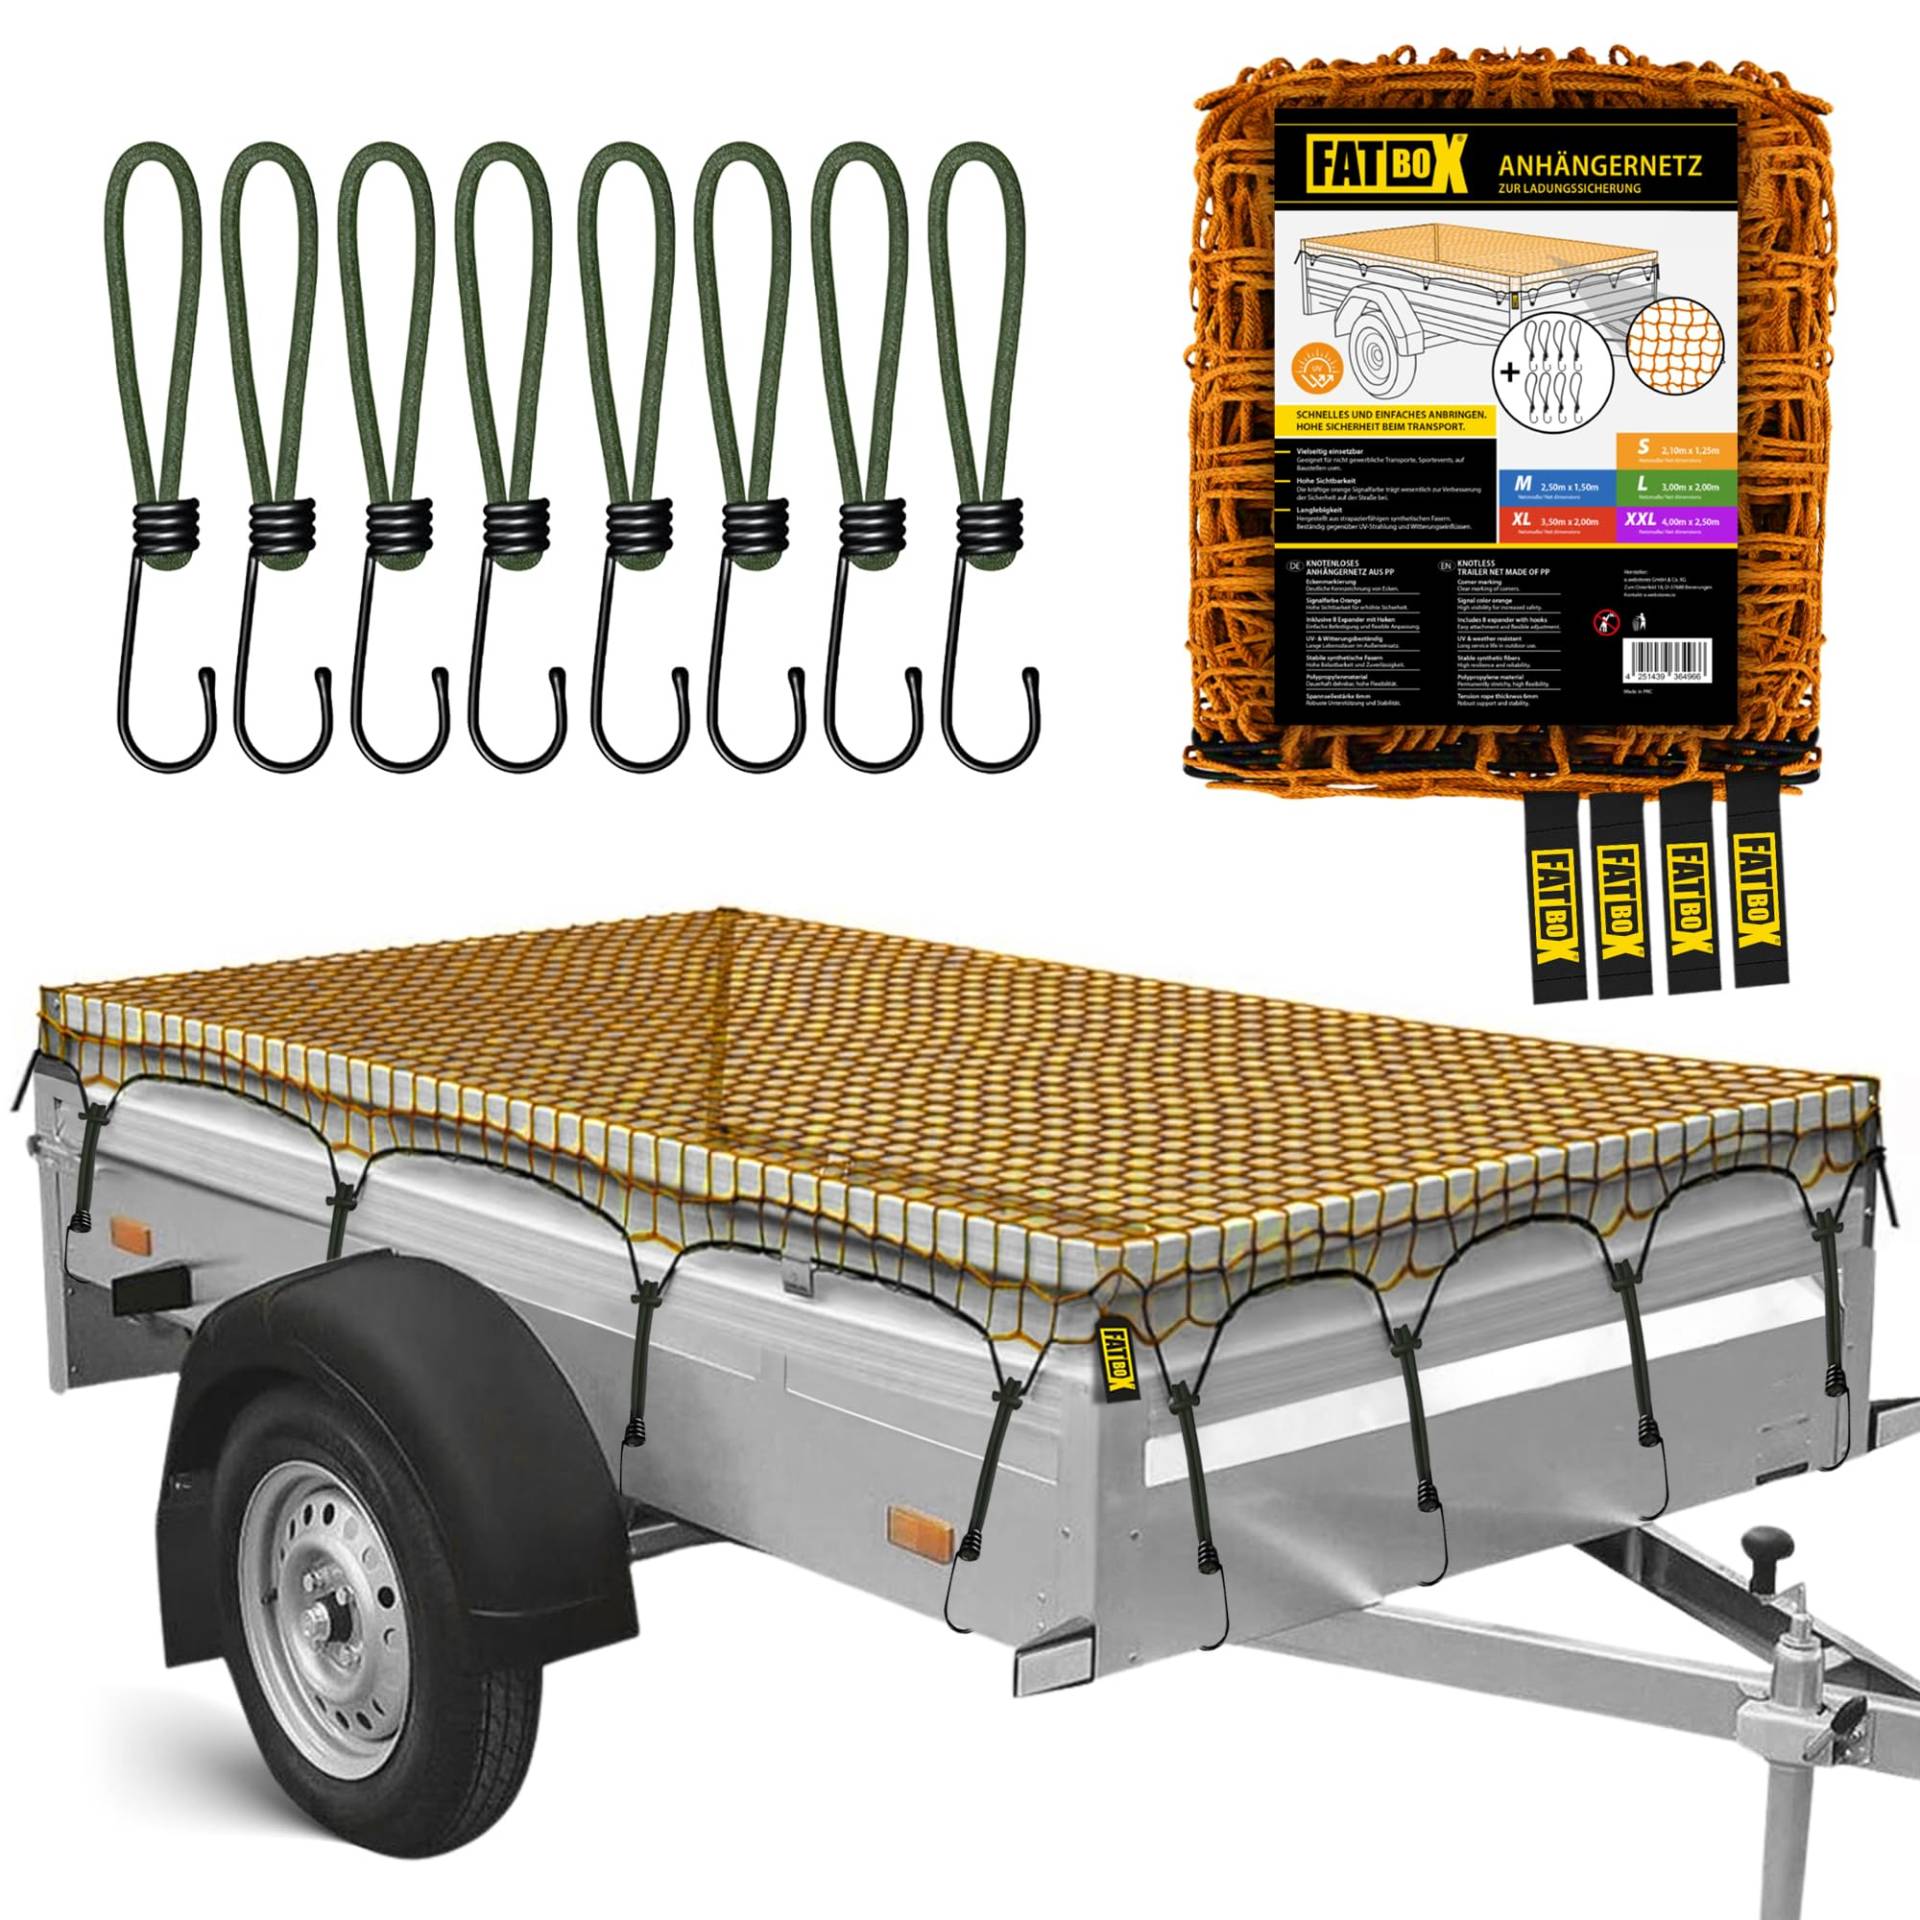 FATBOX Anhängernetz - DEHNBAR & ROBUST - Ladegutsicherung für Anhänger 1x2m bis 2x3m - UV-beständig - 4mm Kordel - Maschenweite 4cm (S - 2,10 x 1,25 m) von FATBOX